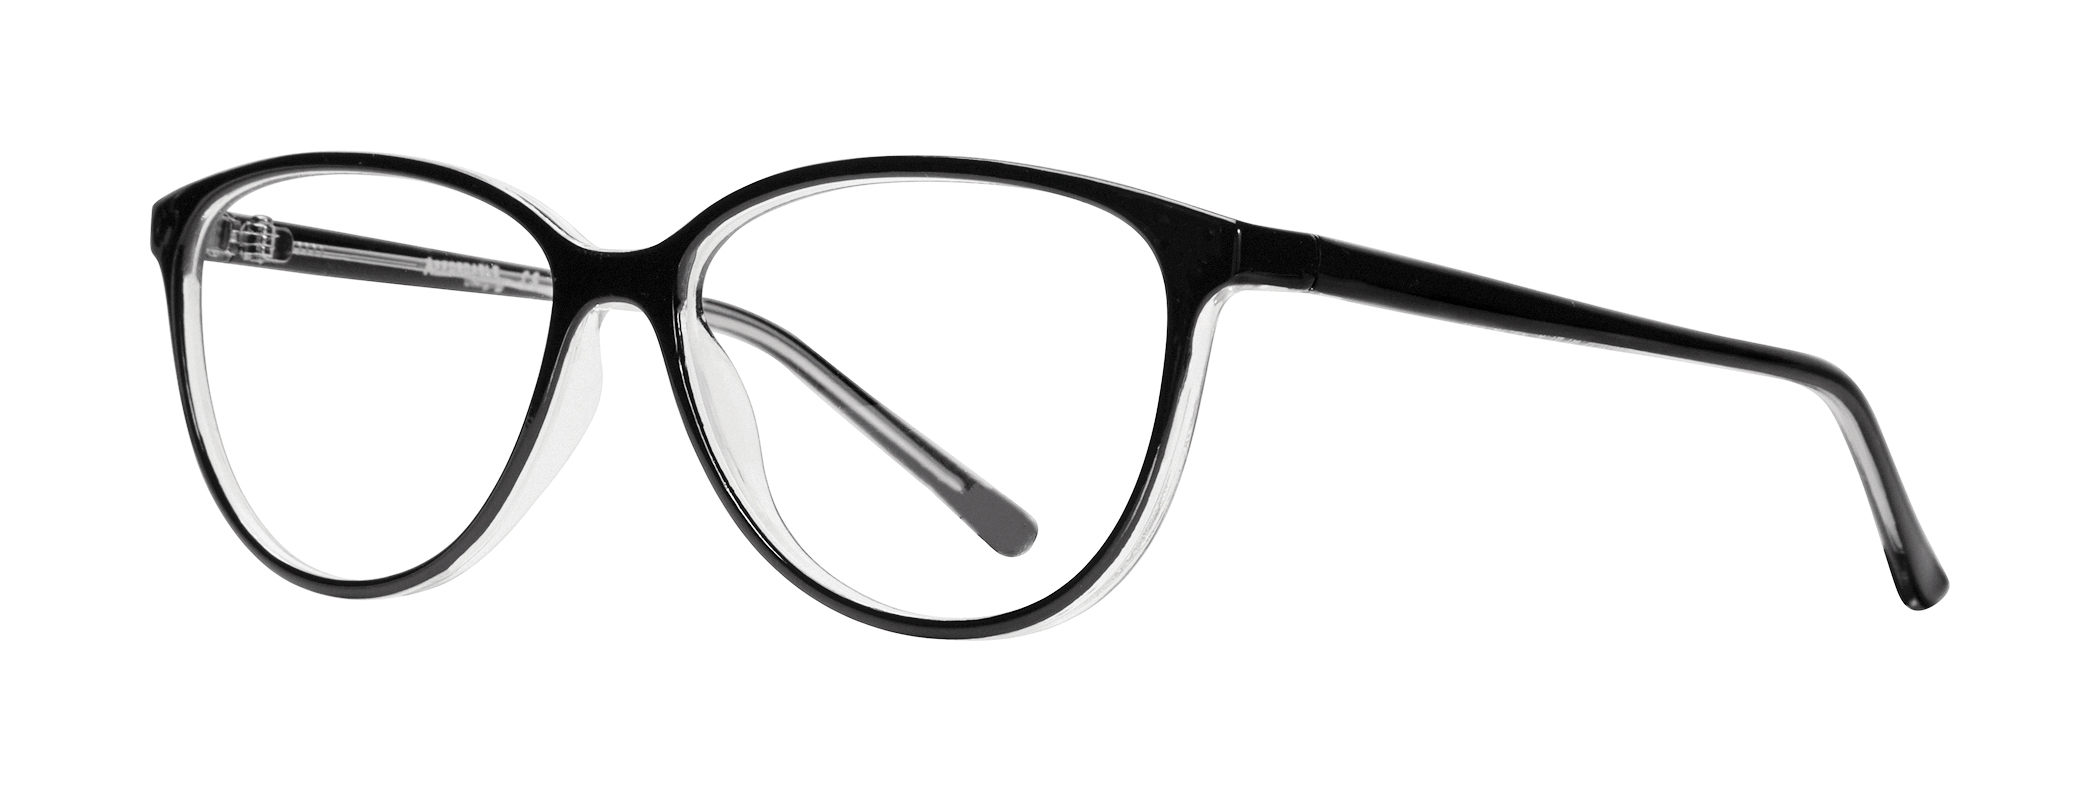 affordable glasses